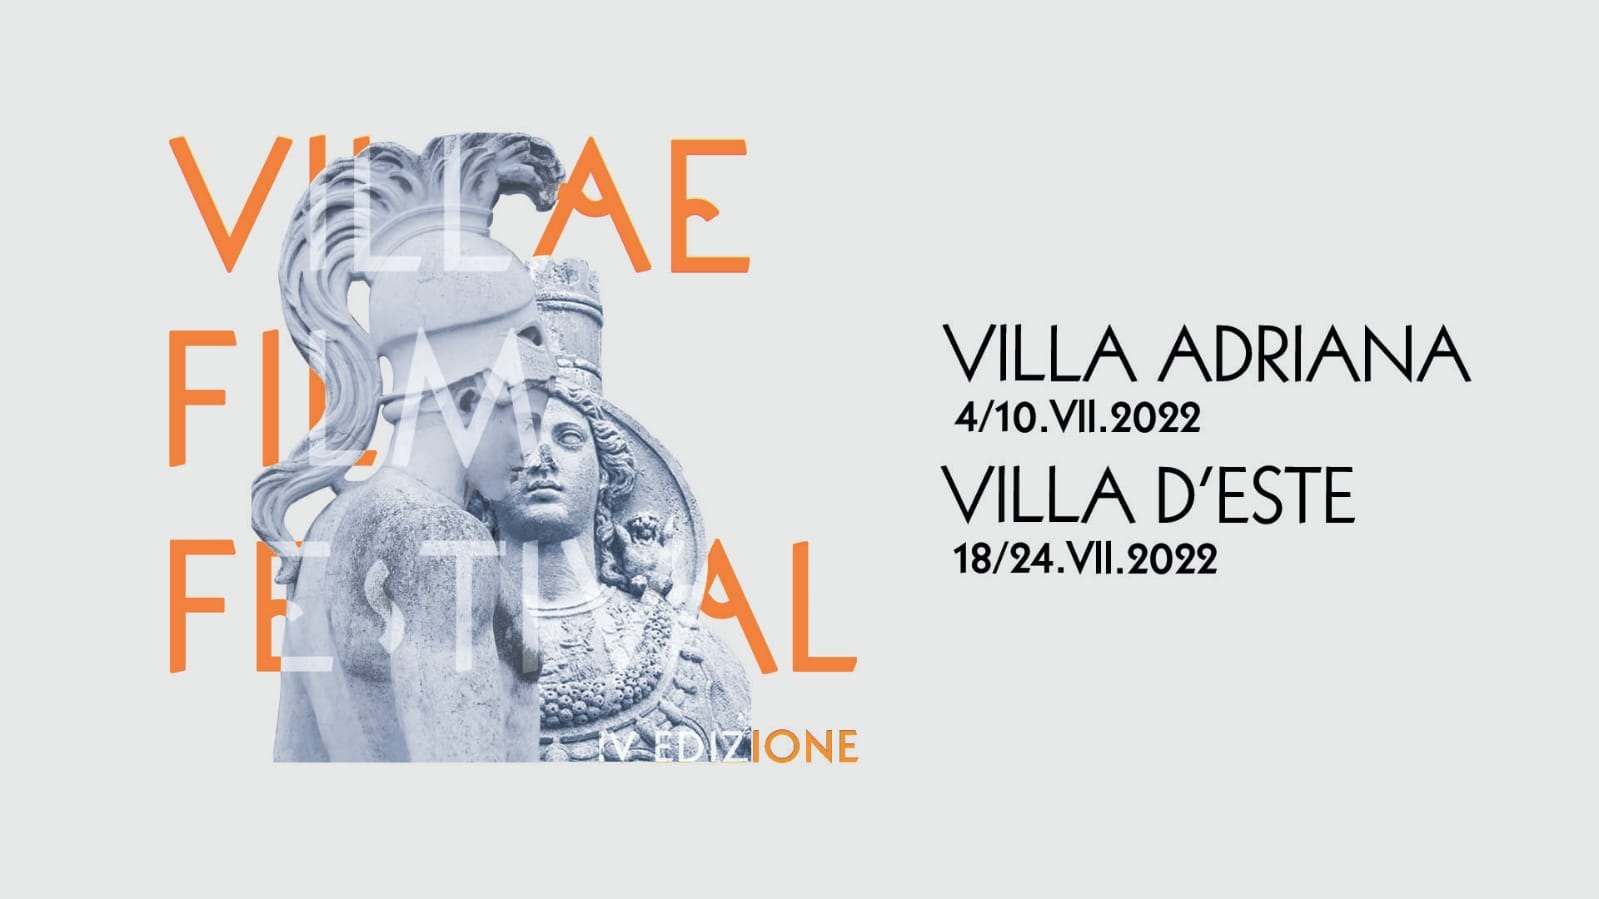 Villae Film Festival: Cinema e Arte a Villa Adriana 4-10 luglio e Villa d'Este 18-24 luglio - Tivoli - quarta edizione